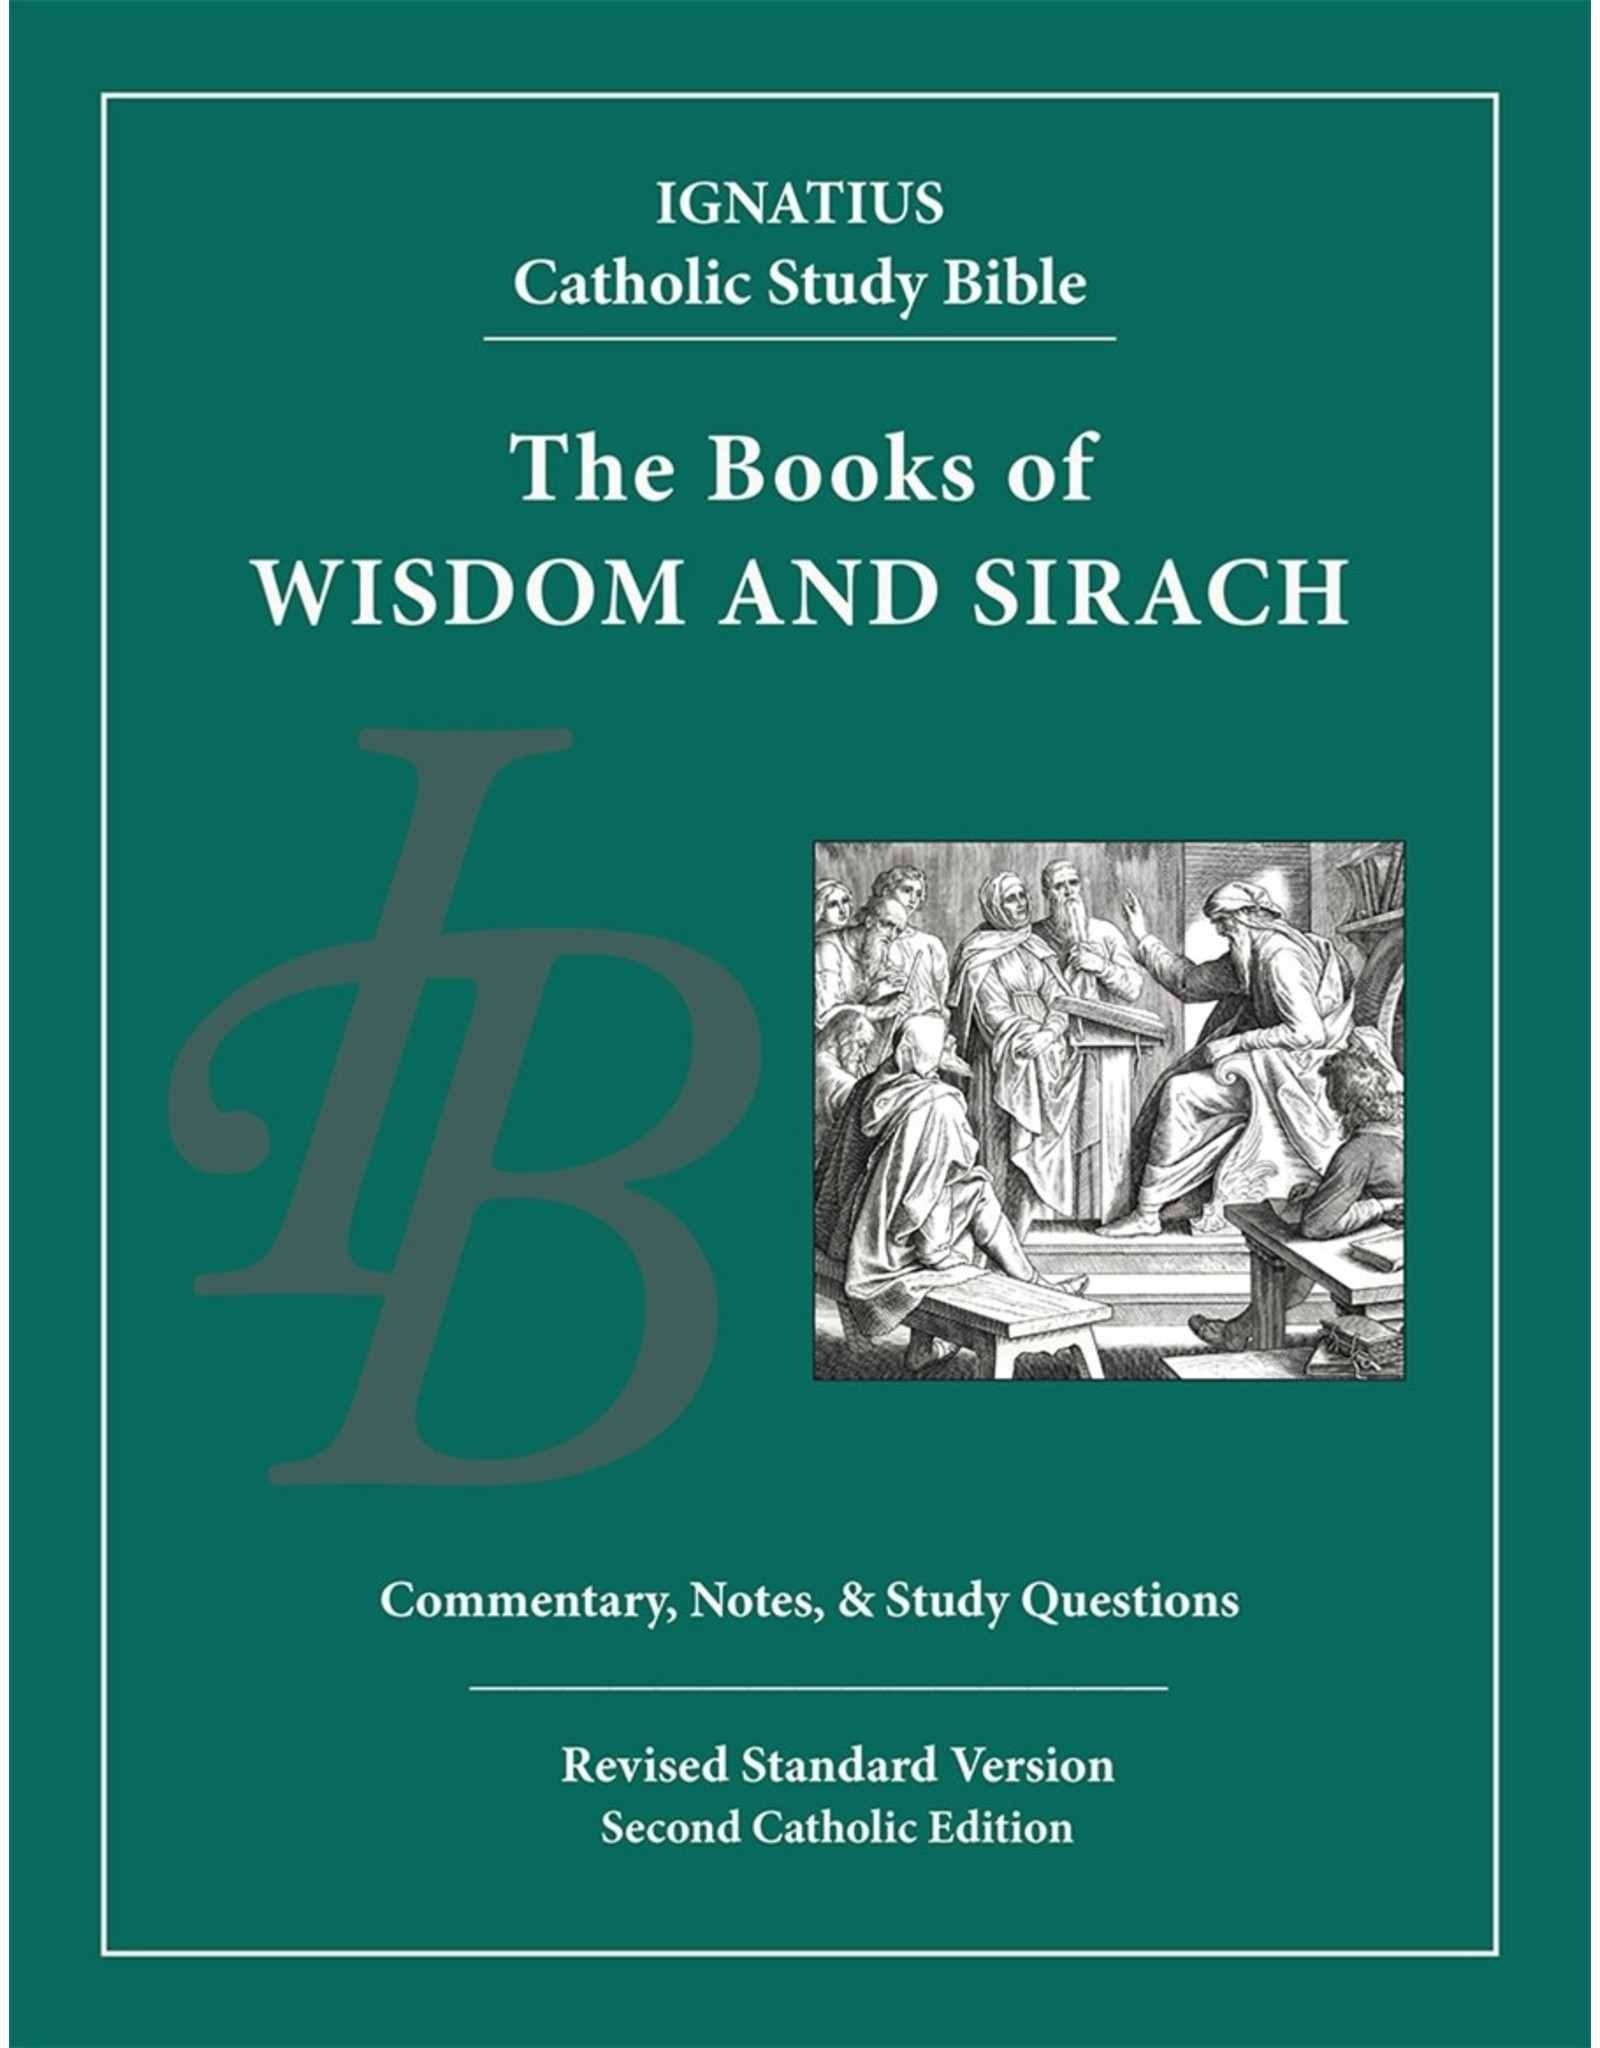 Ignatius Press RSV Ignatius Catholic Study Bible-Wisdom & Sirach